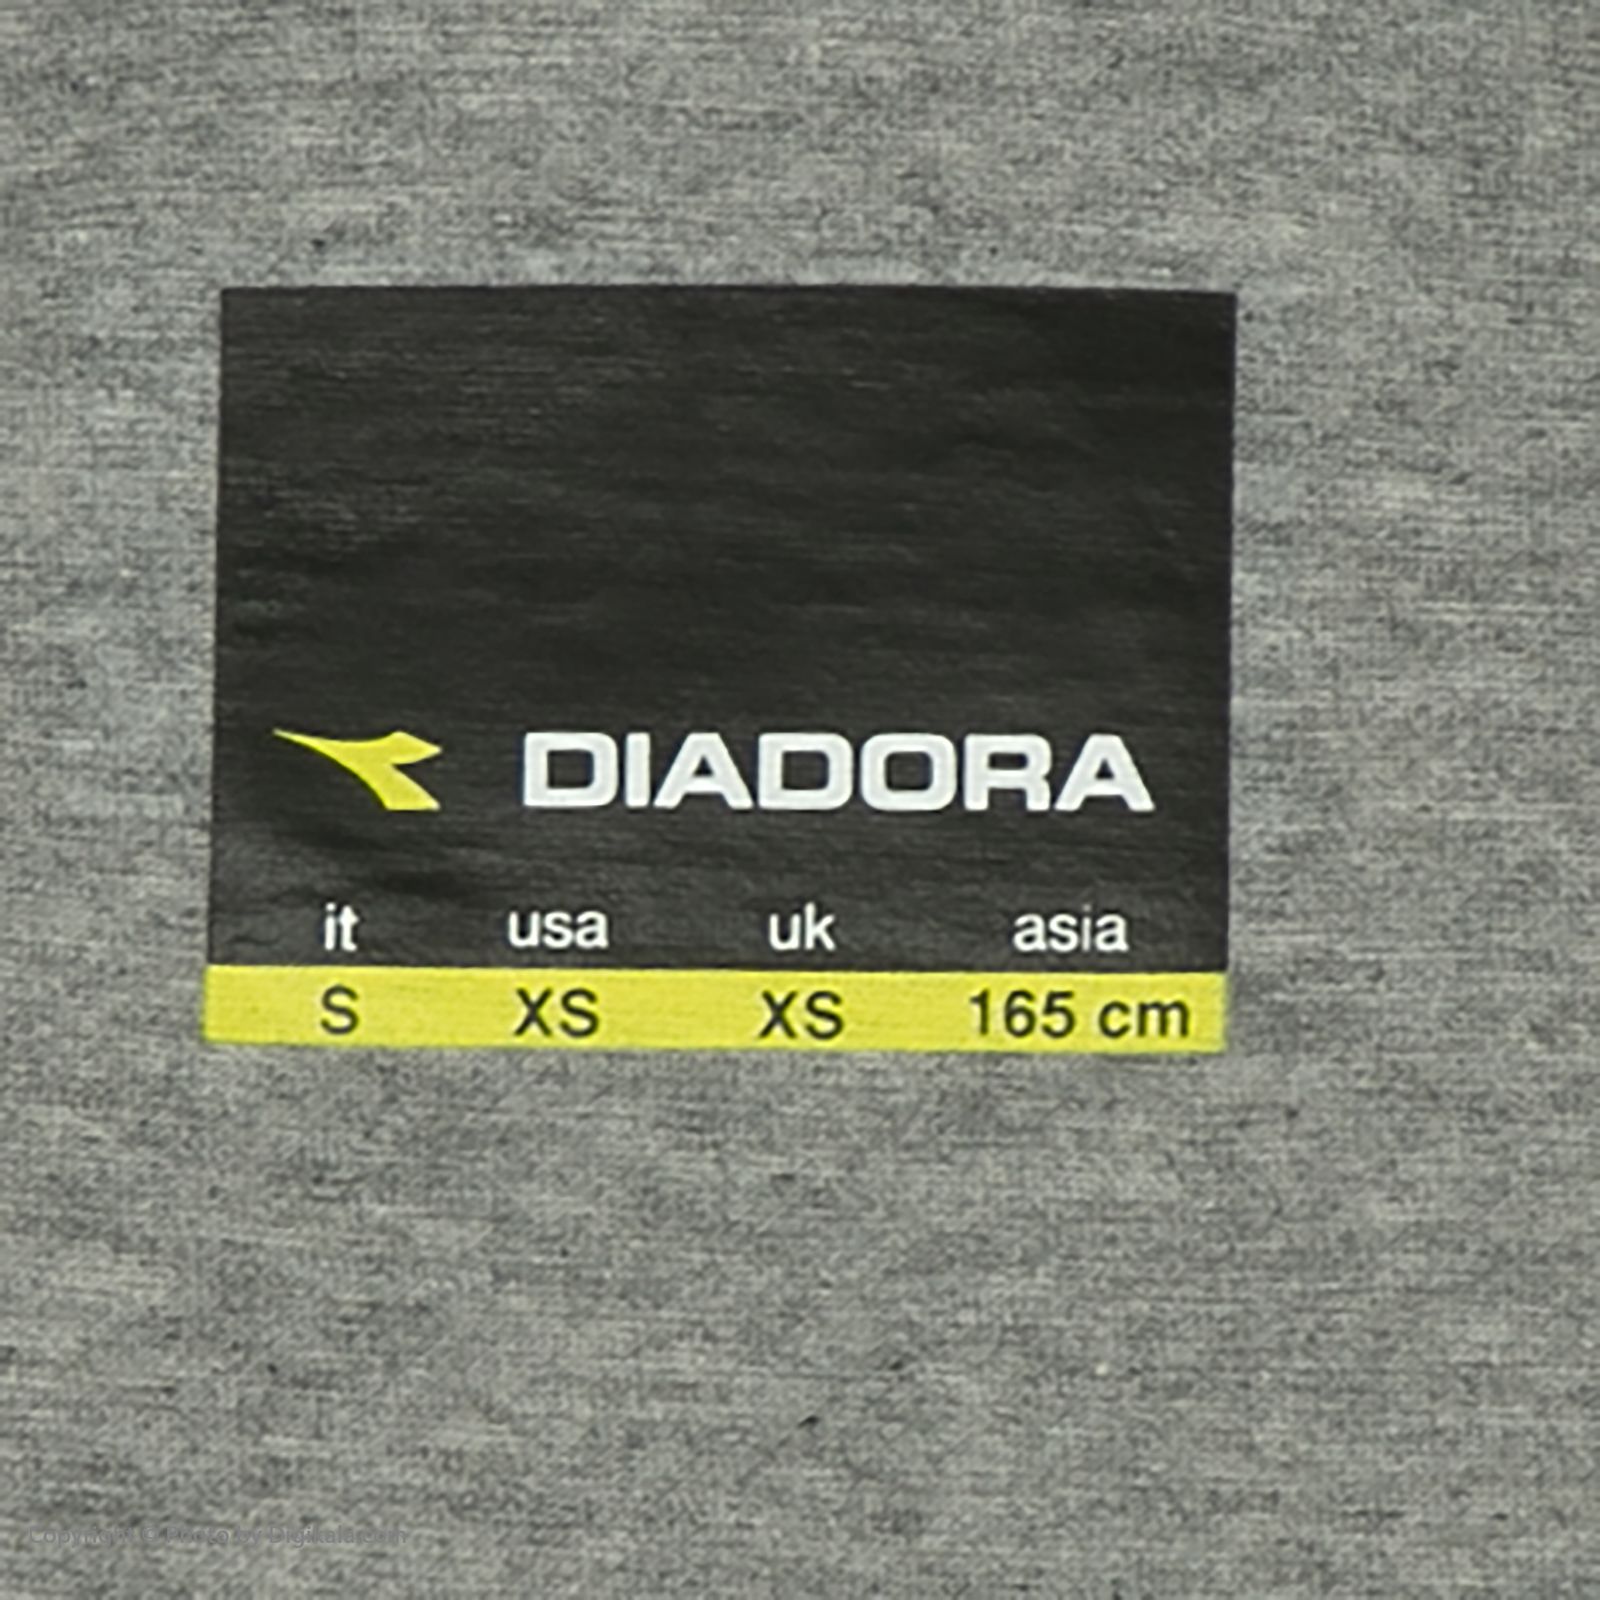 تی شرت آستین کوتاه ورزشی زنانه دیادورا مدل A16 -  - 5